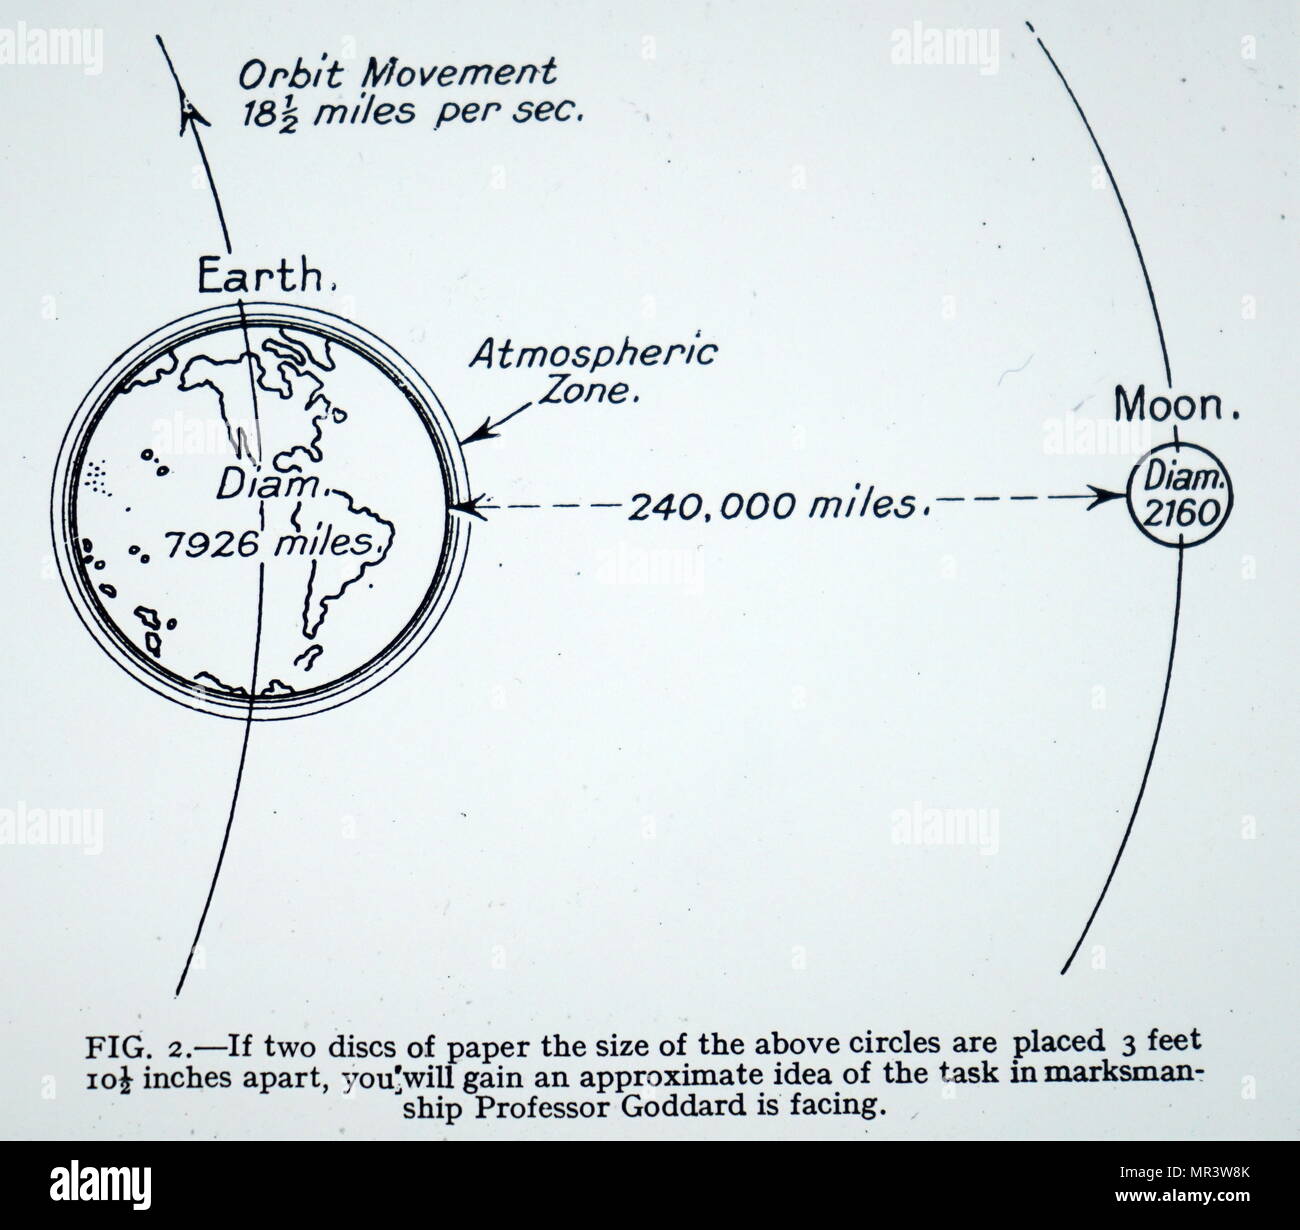 Ilustración representando el vuelo planificado de Robert H. Goddard rocket. Robert H. Goddard (1882-1945), un ingeniero norteamericano, profesor, físico e inventor. Fecha siglo xx Foto de stock